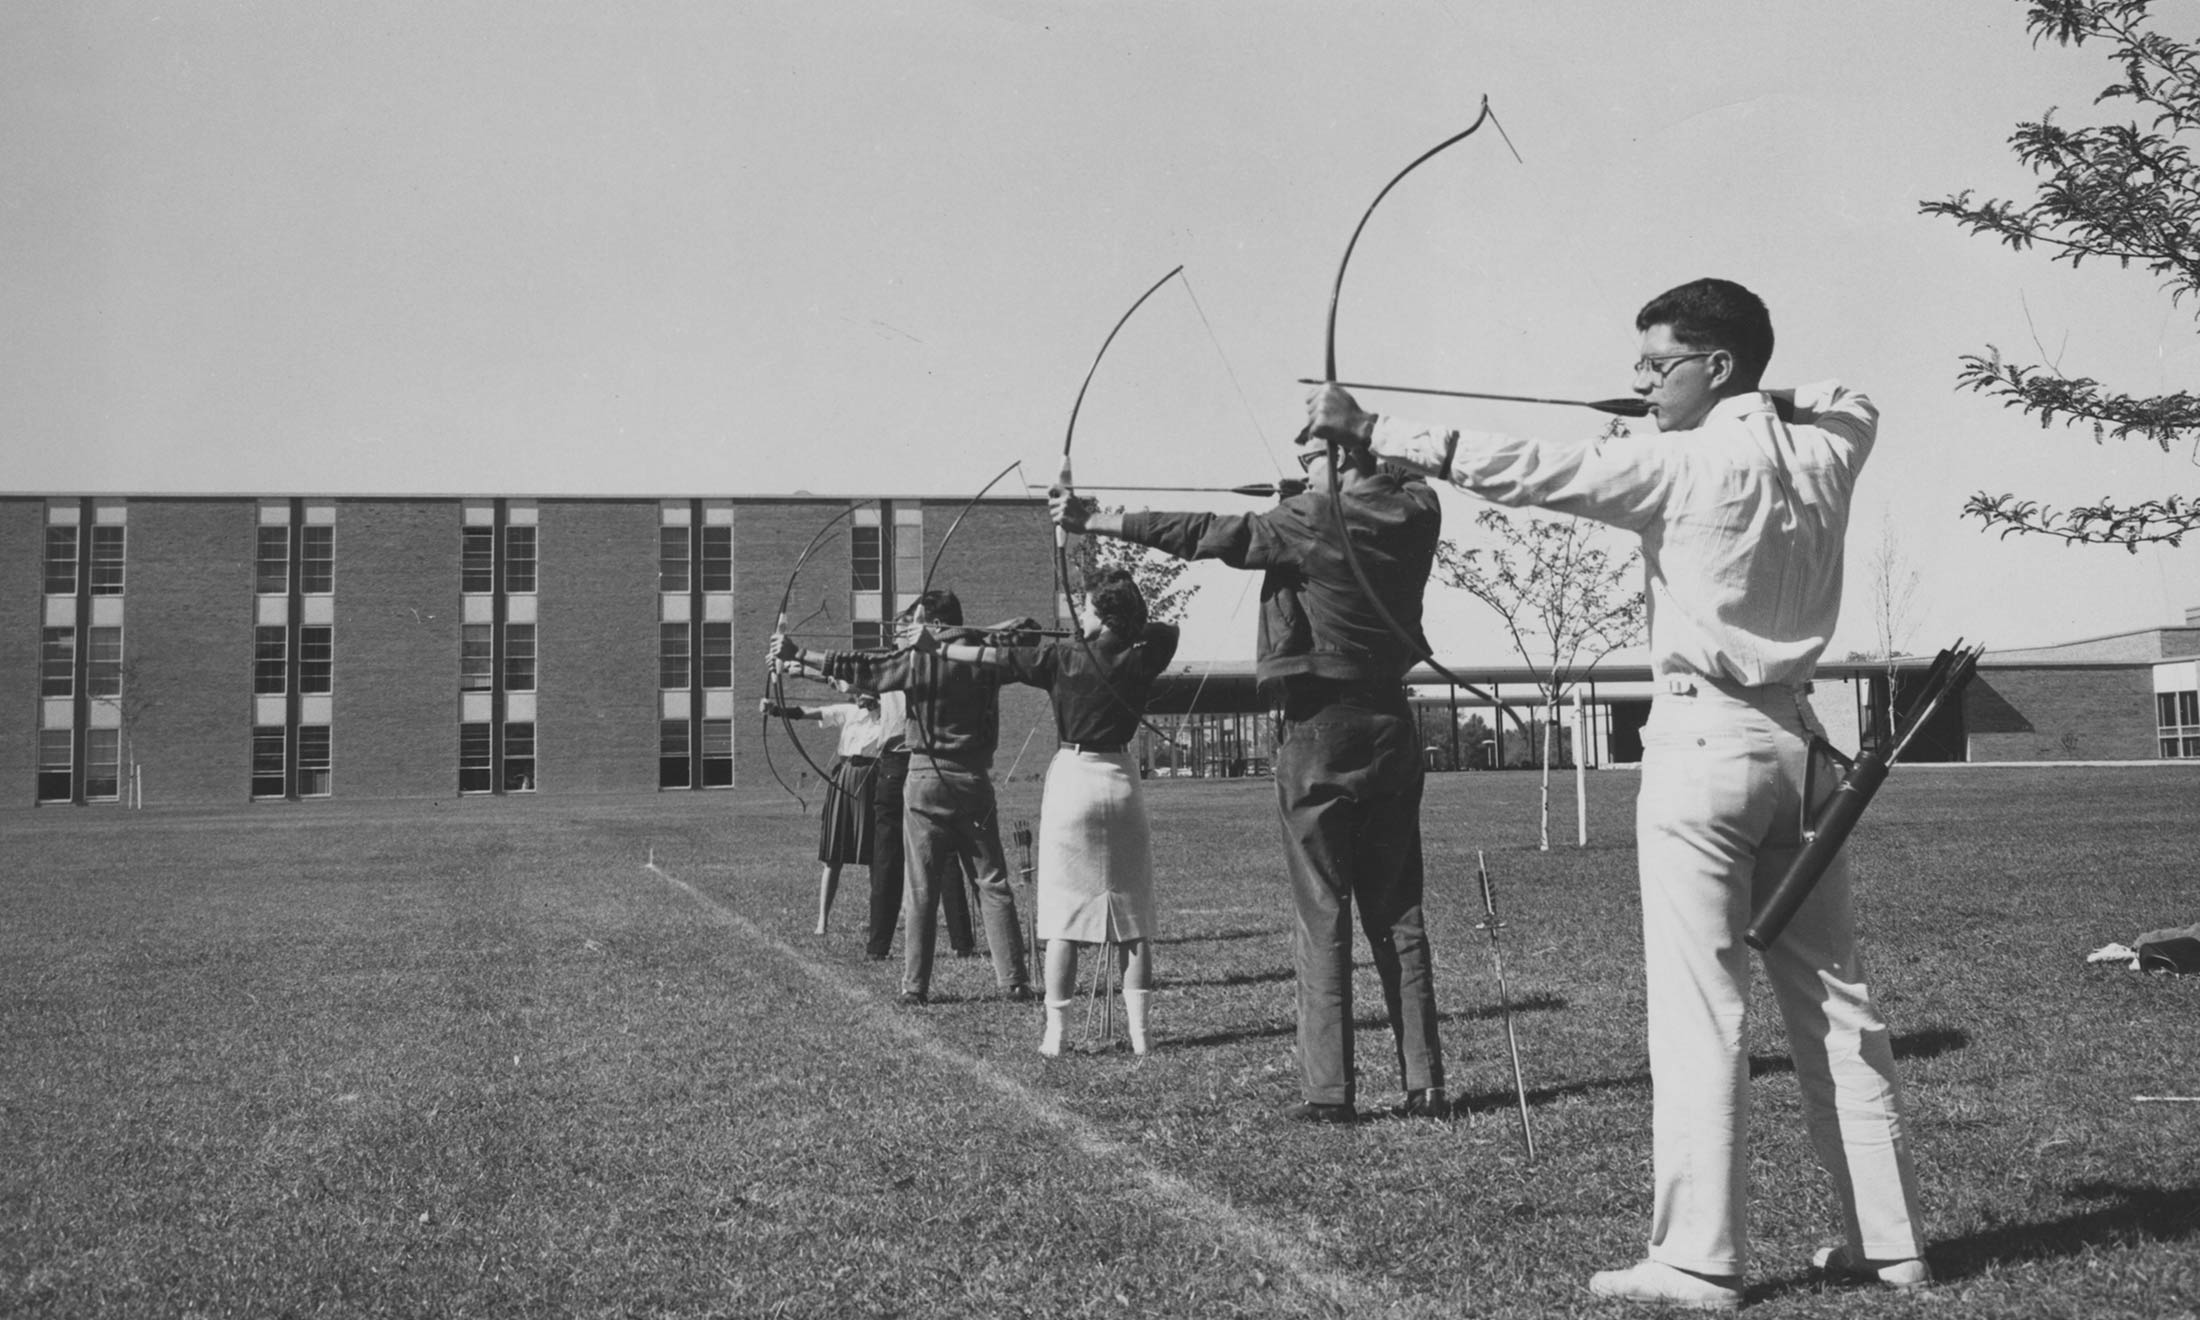 Students practice archery at Oakland University